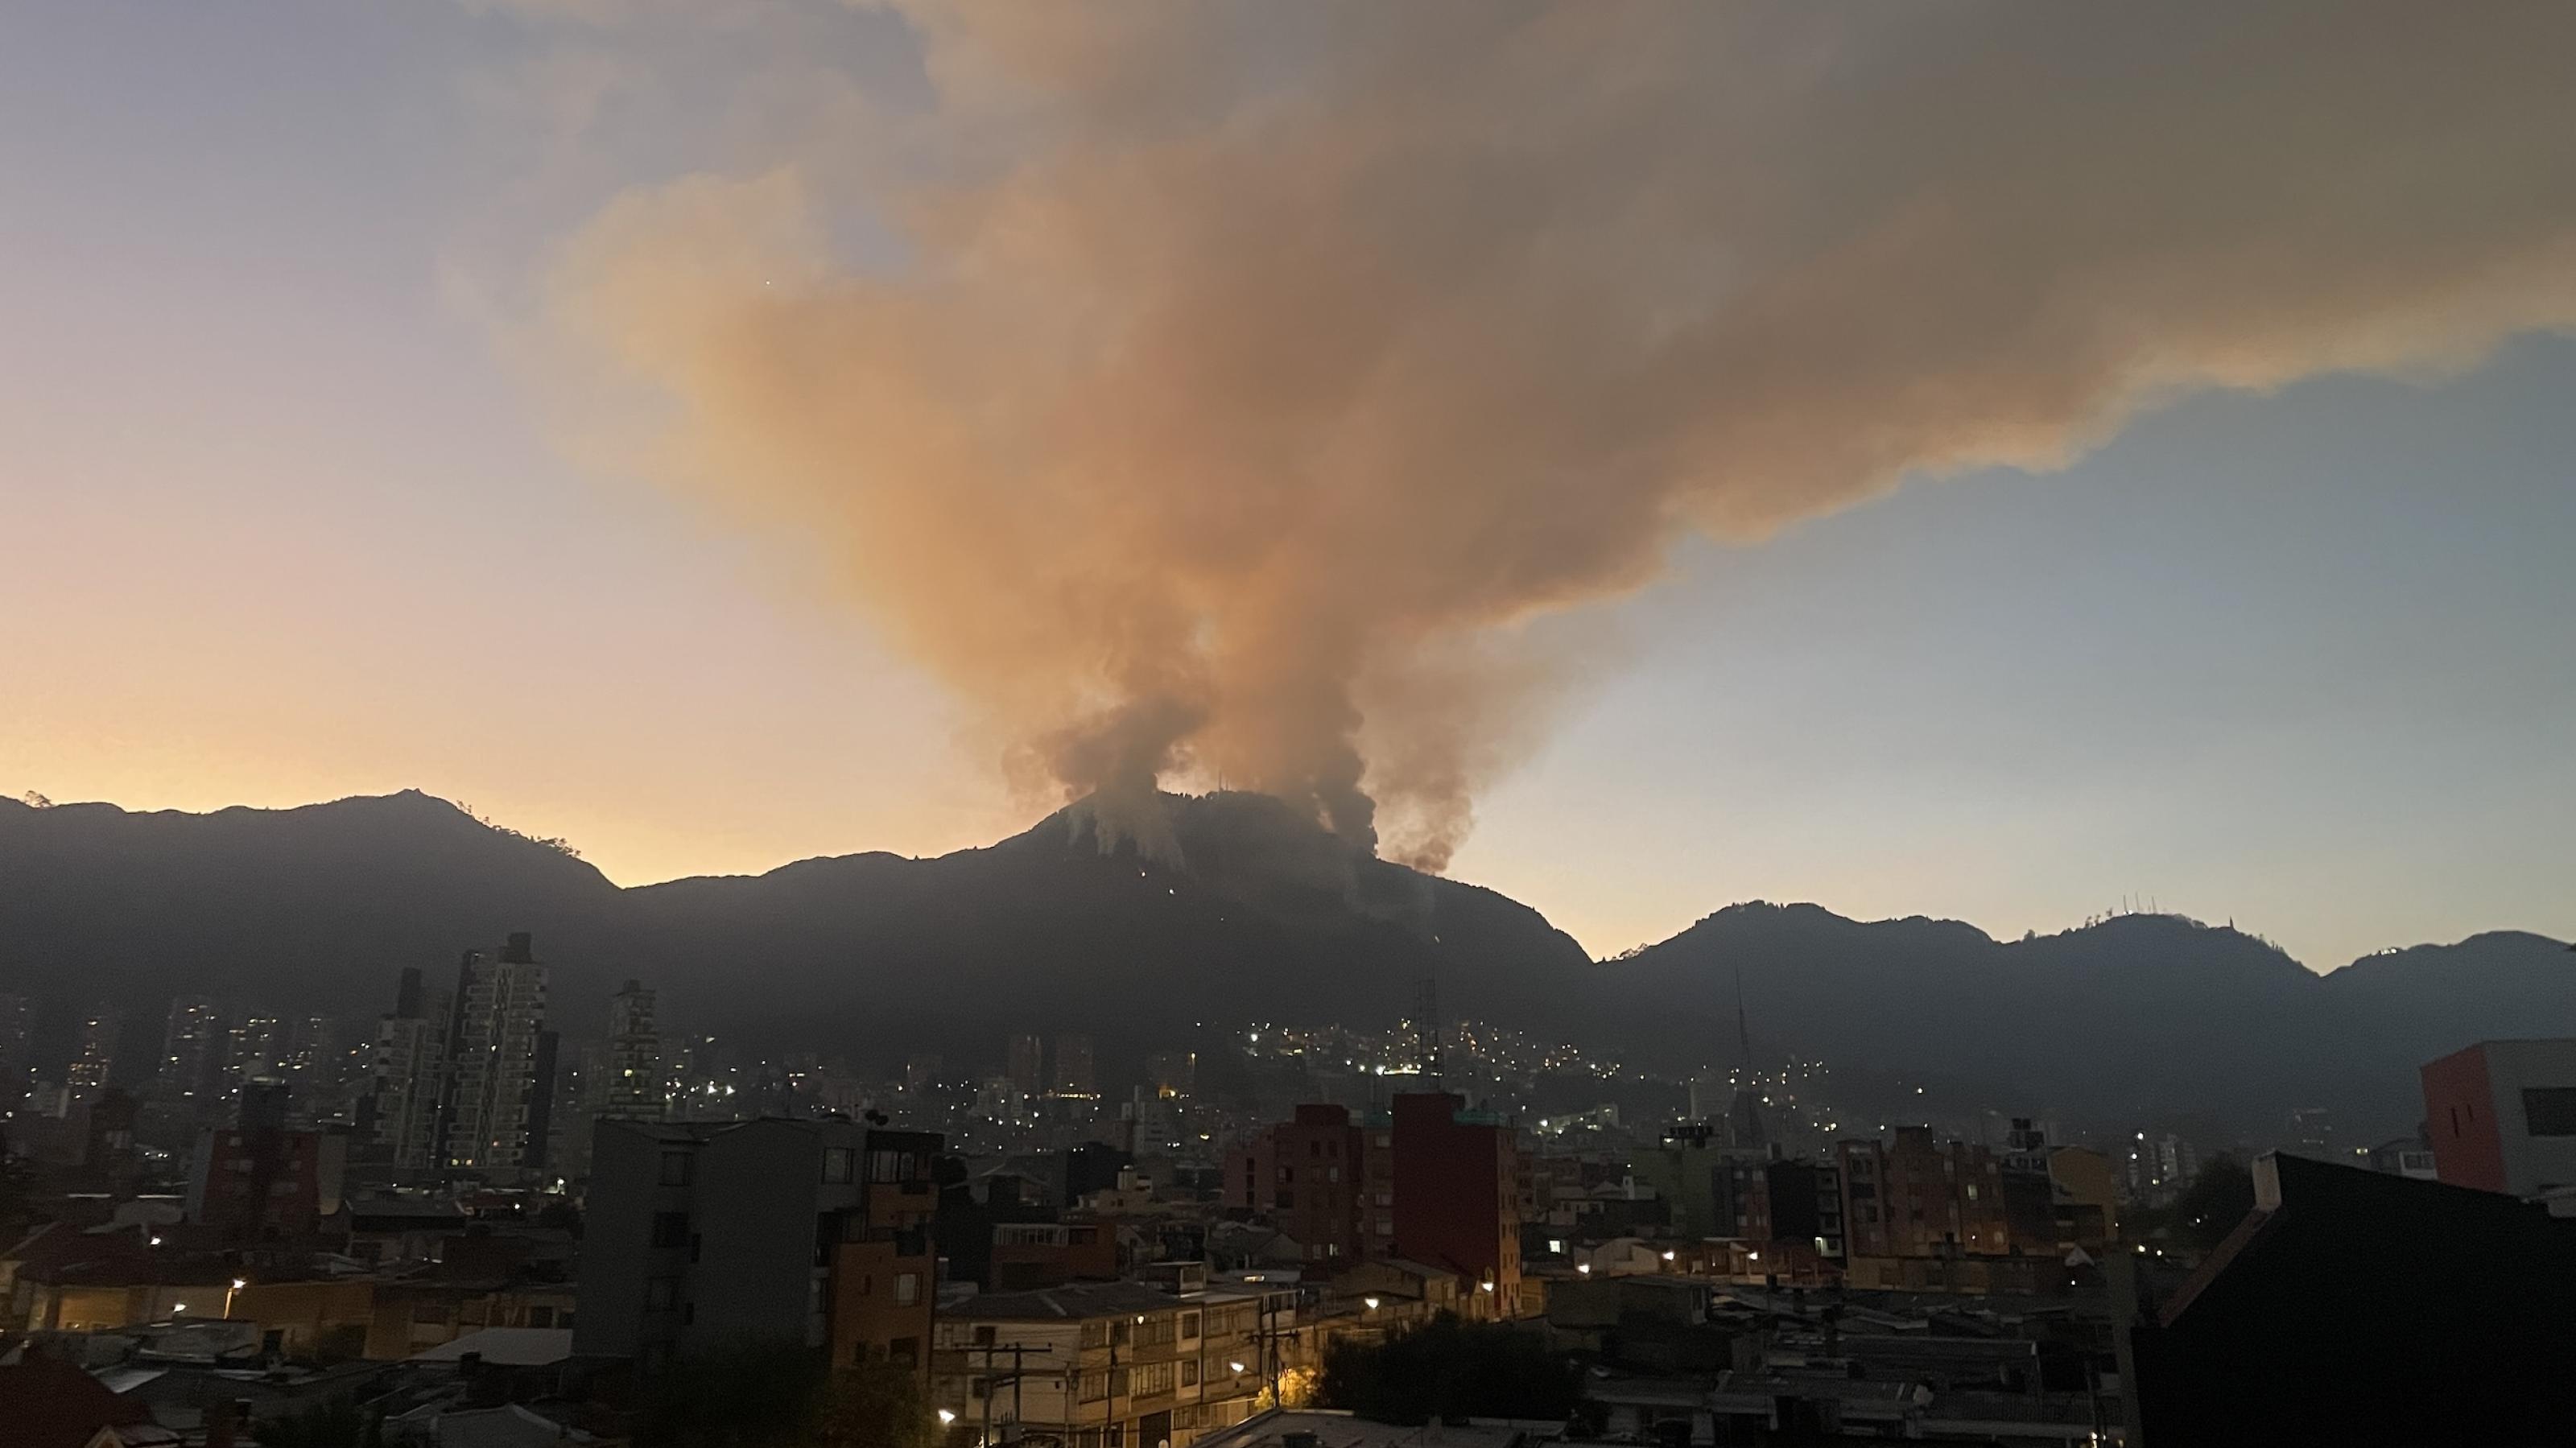 Stadtpanorama von Bogotá mit Hochhäusern in der Dämmerung. Im Hintergrund eine Bergkette. Vom Gipfel in der Mitte zieht ein Rauchkegel in die Höhe. Das sieht aus wie bei einem Vulkan.